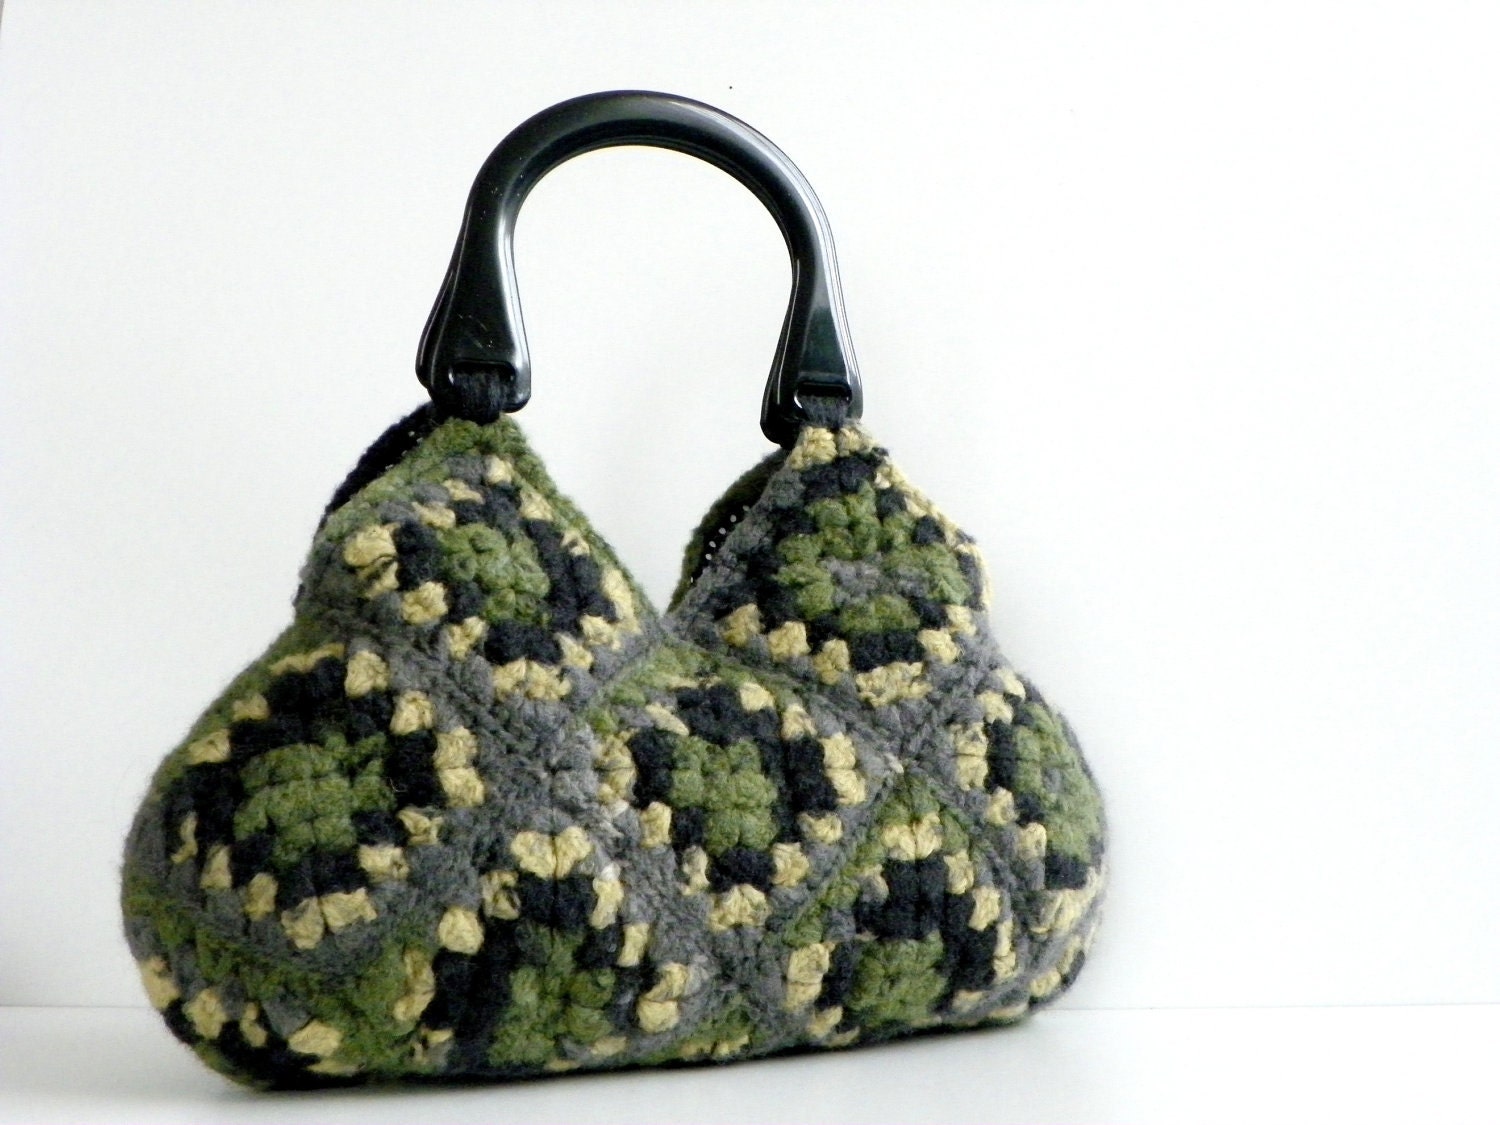 NzLbags-войлочная сумочка вязание крючком Шерсть - Оттенки Замечательный Цвет - Nr-0184